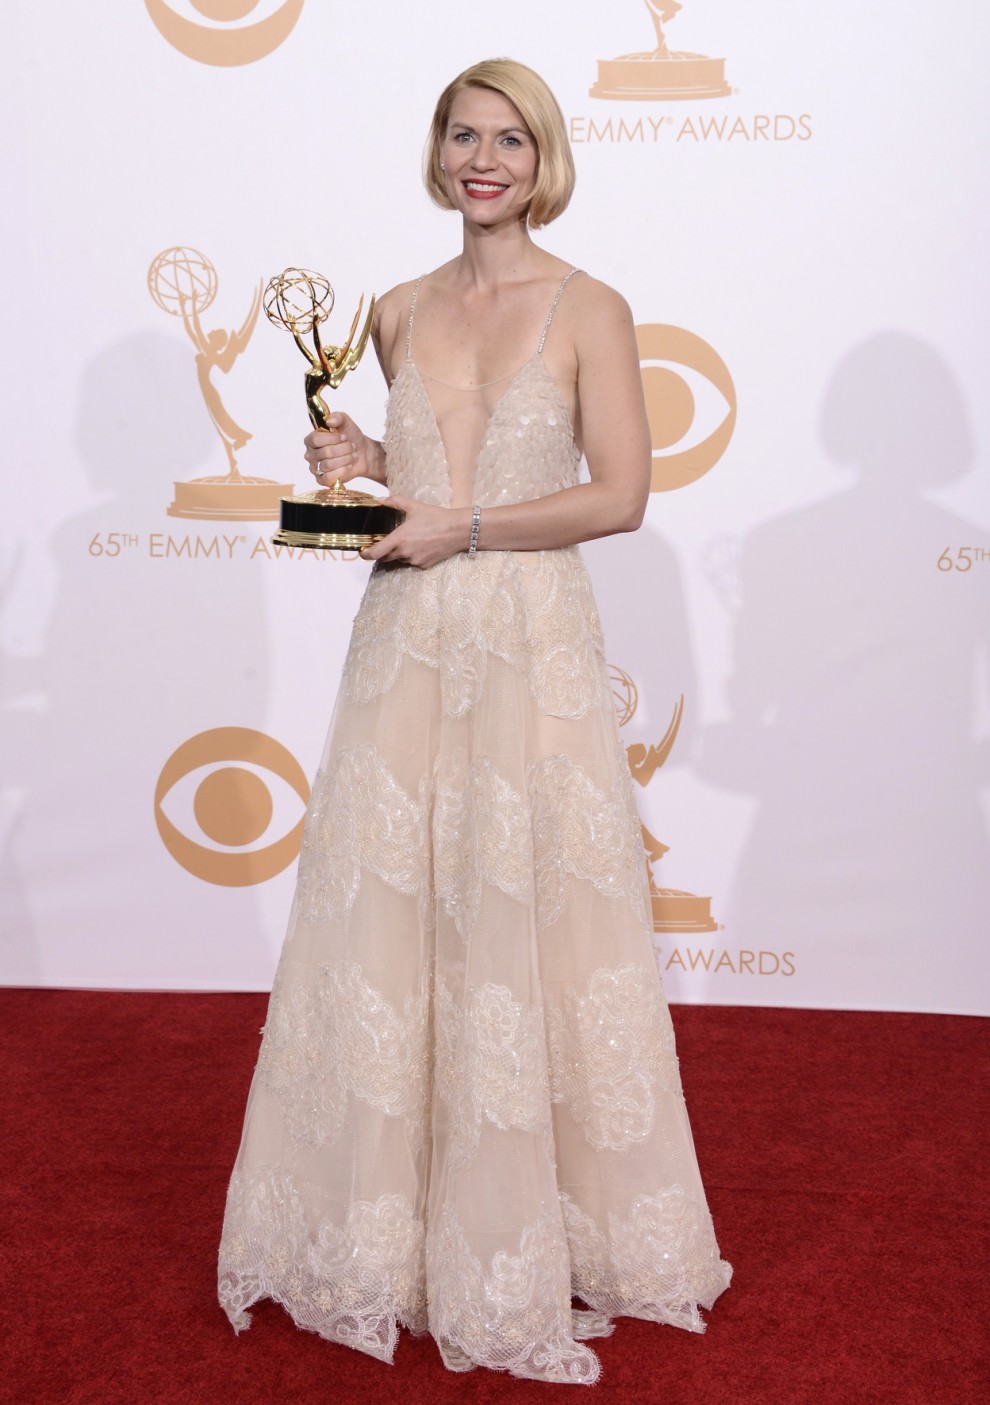 Sofia Vergara, Christina Hendricks, Cobie Smulders i inne gwiazdy na rozdaniu nagród Emmy 2013